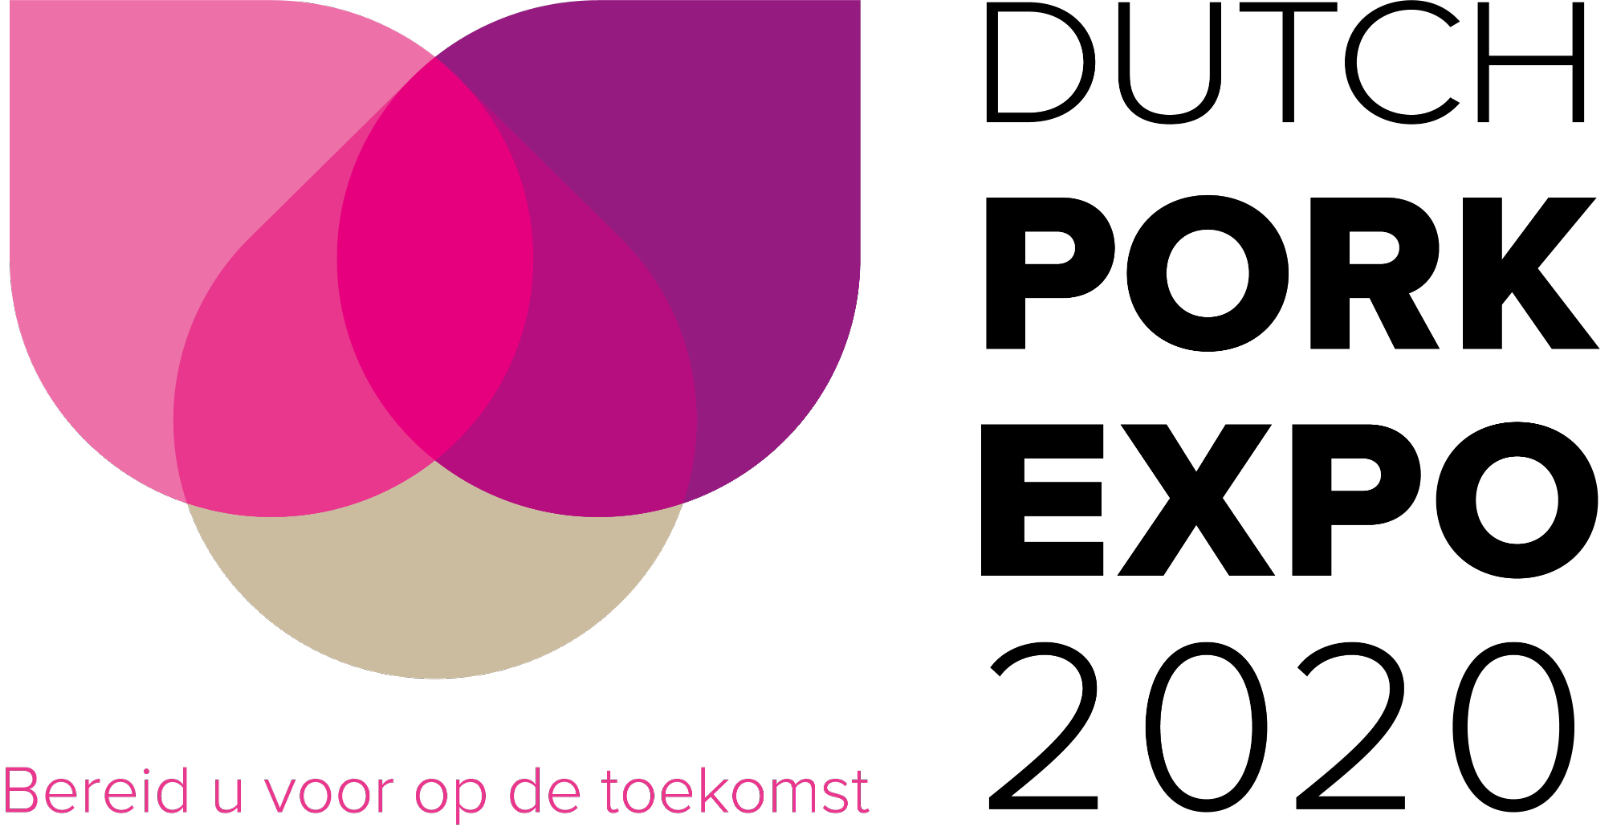 Dutch Pork Expo logo